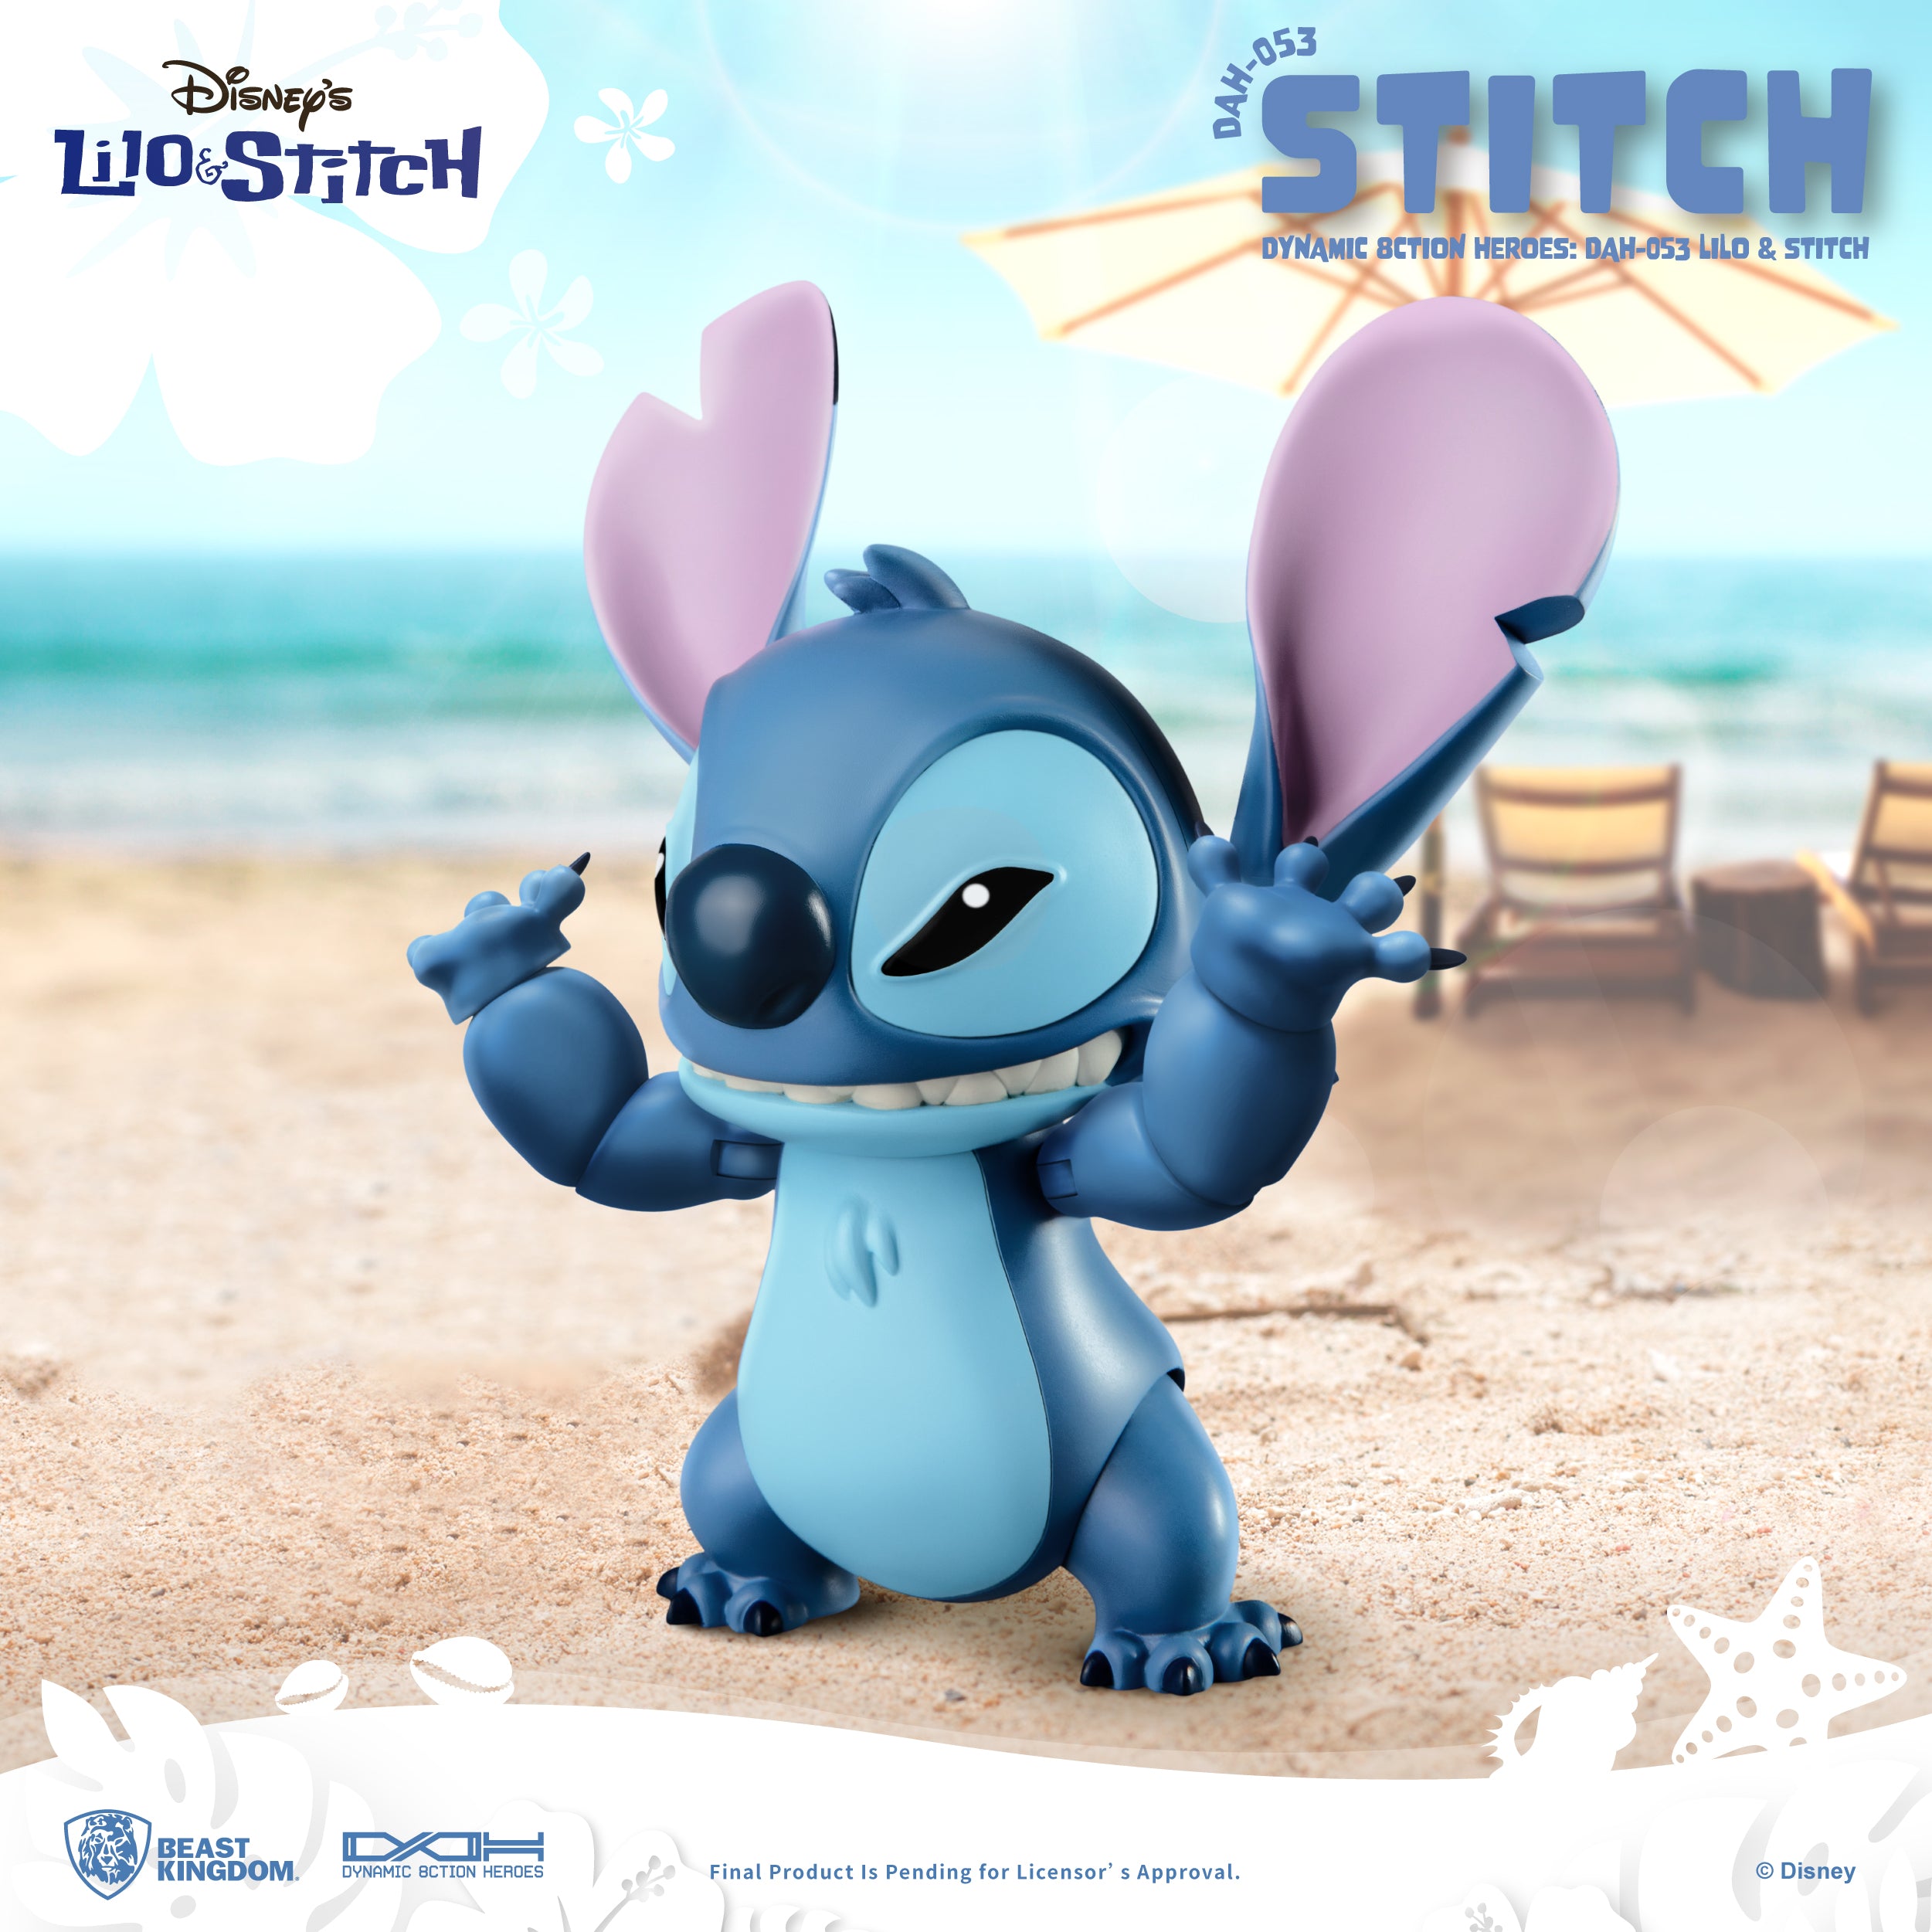 Beast Kingdom DAH-053 Disney Lilo & Stitch: Stitch 1:9 Scale